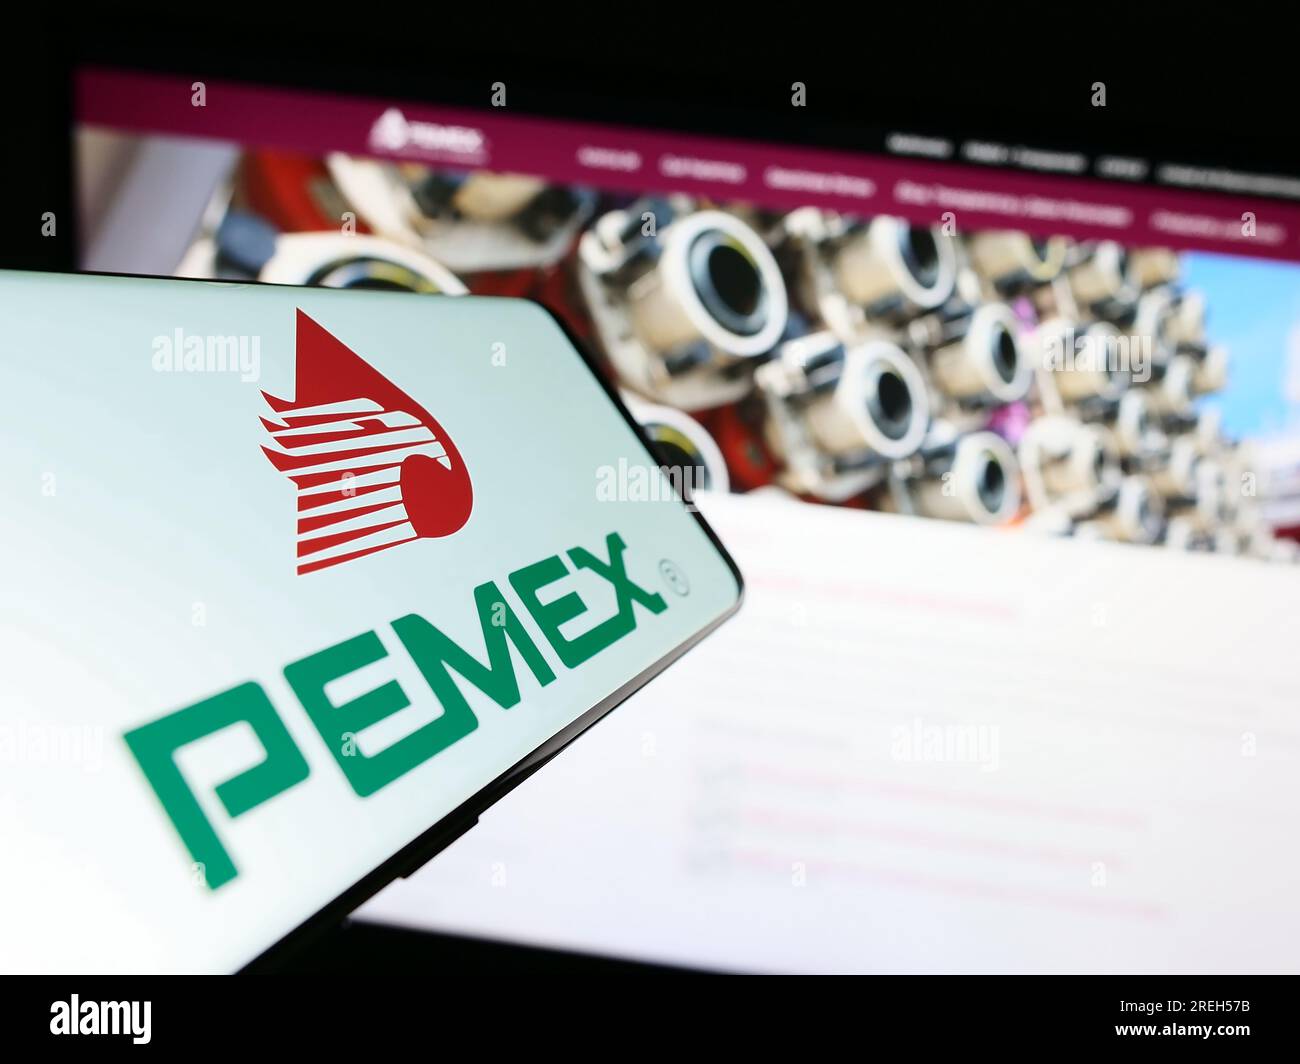 Smartphone avec le logo de la compagnie pétrolière Petroleos Mexicanos (Pemex) sur l'écran devant le site Web de l'entreprise. Concentrez-vous sur le centre-droit de l'écran du téléphone. Banque D'Images